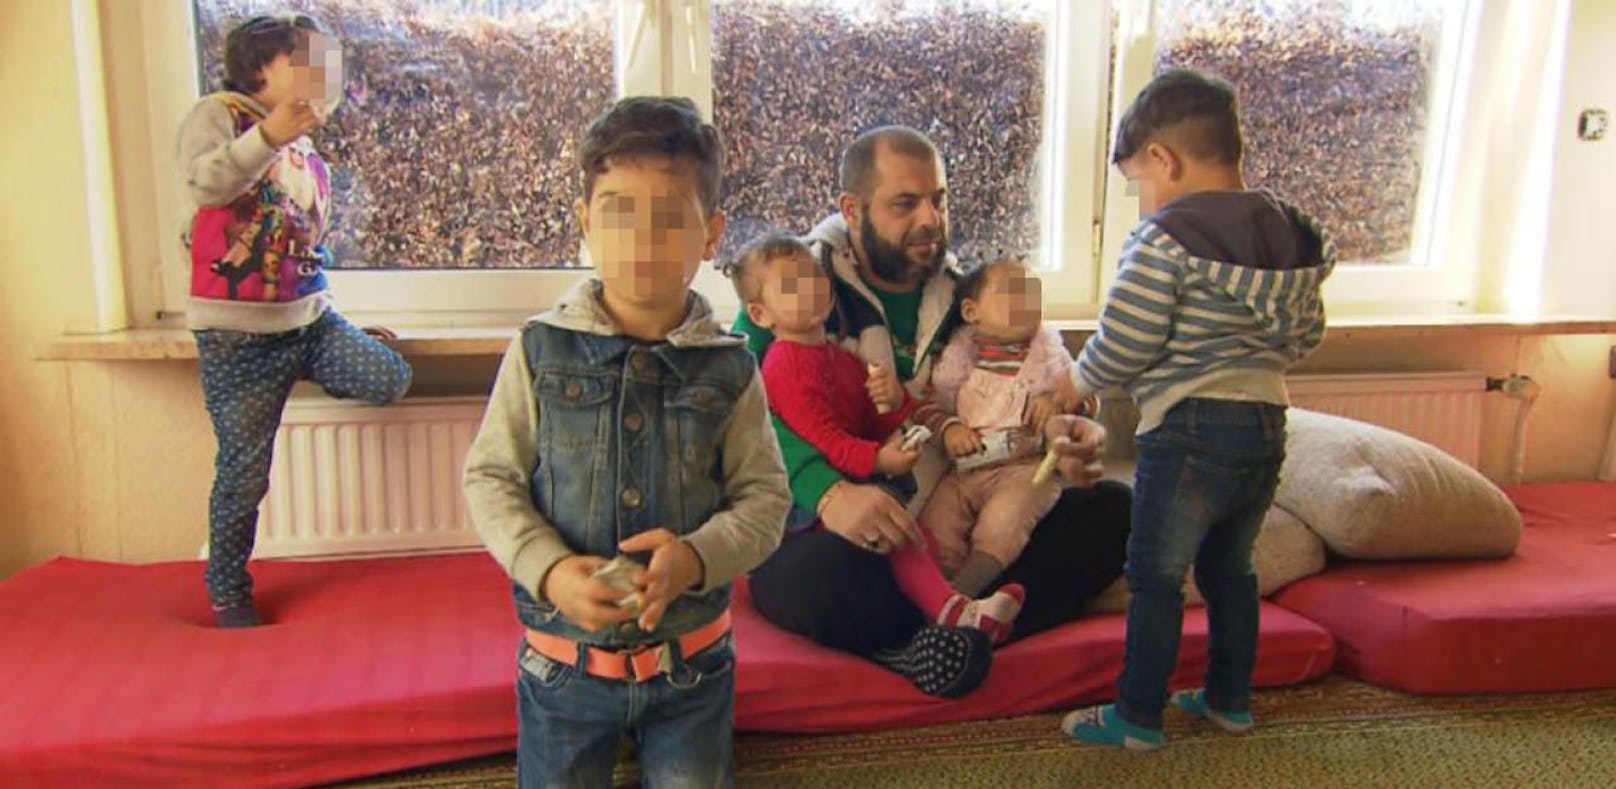 Der syrische Flüchtling Ahmad A. mit fünf seiner sechs Kinder von zwei Ehefrauen.